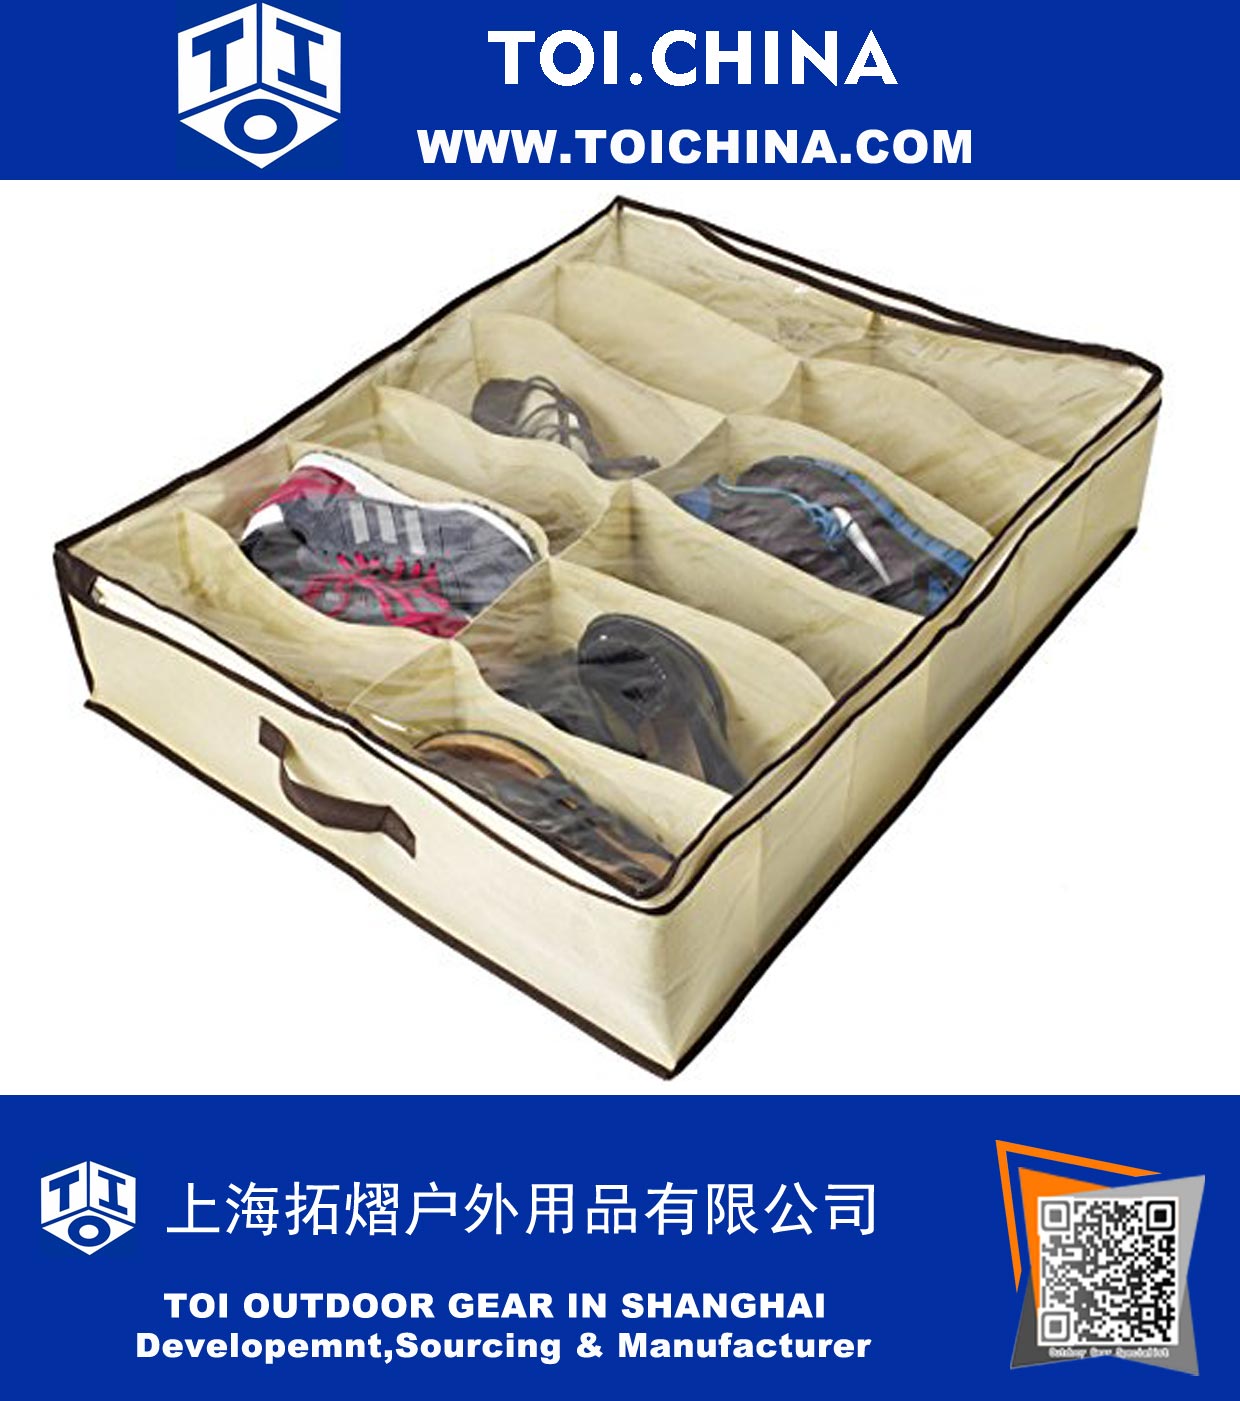 Organizador de sapatos para crianças e adultos (12 pares) - Sapatos Underbed Closet solução de armazenamento - Feito de materiais respiráveis ​​com frontal com zíper de fechamento